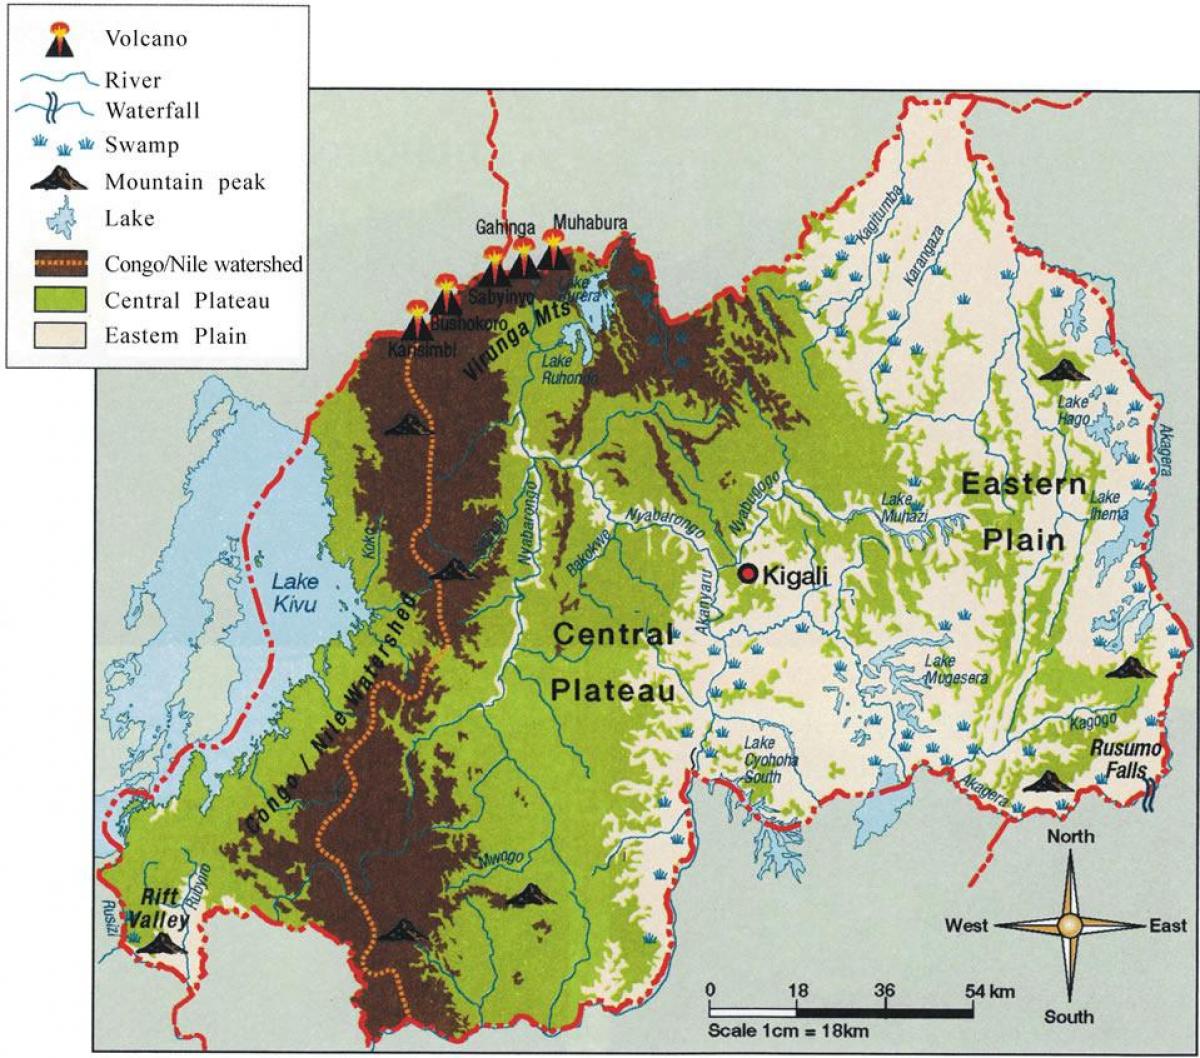 heograpikal na mga mapa ng Rwanda